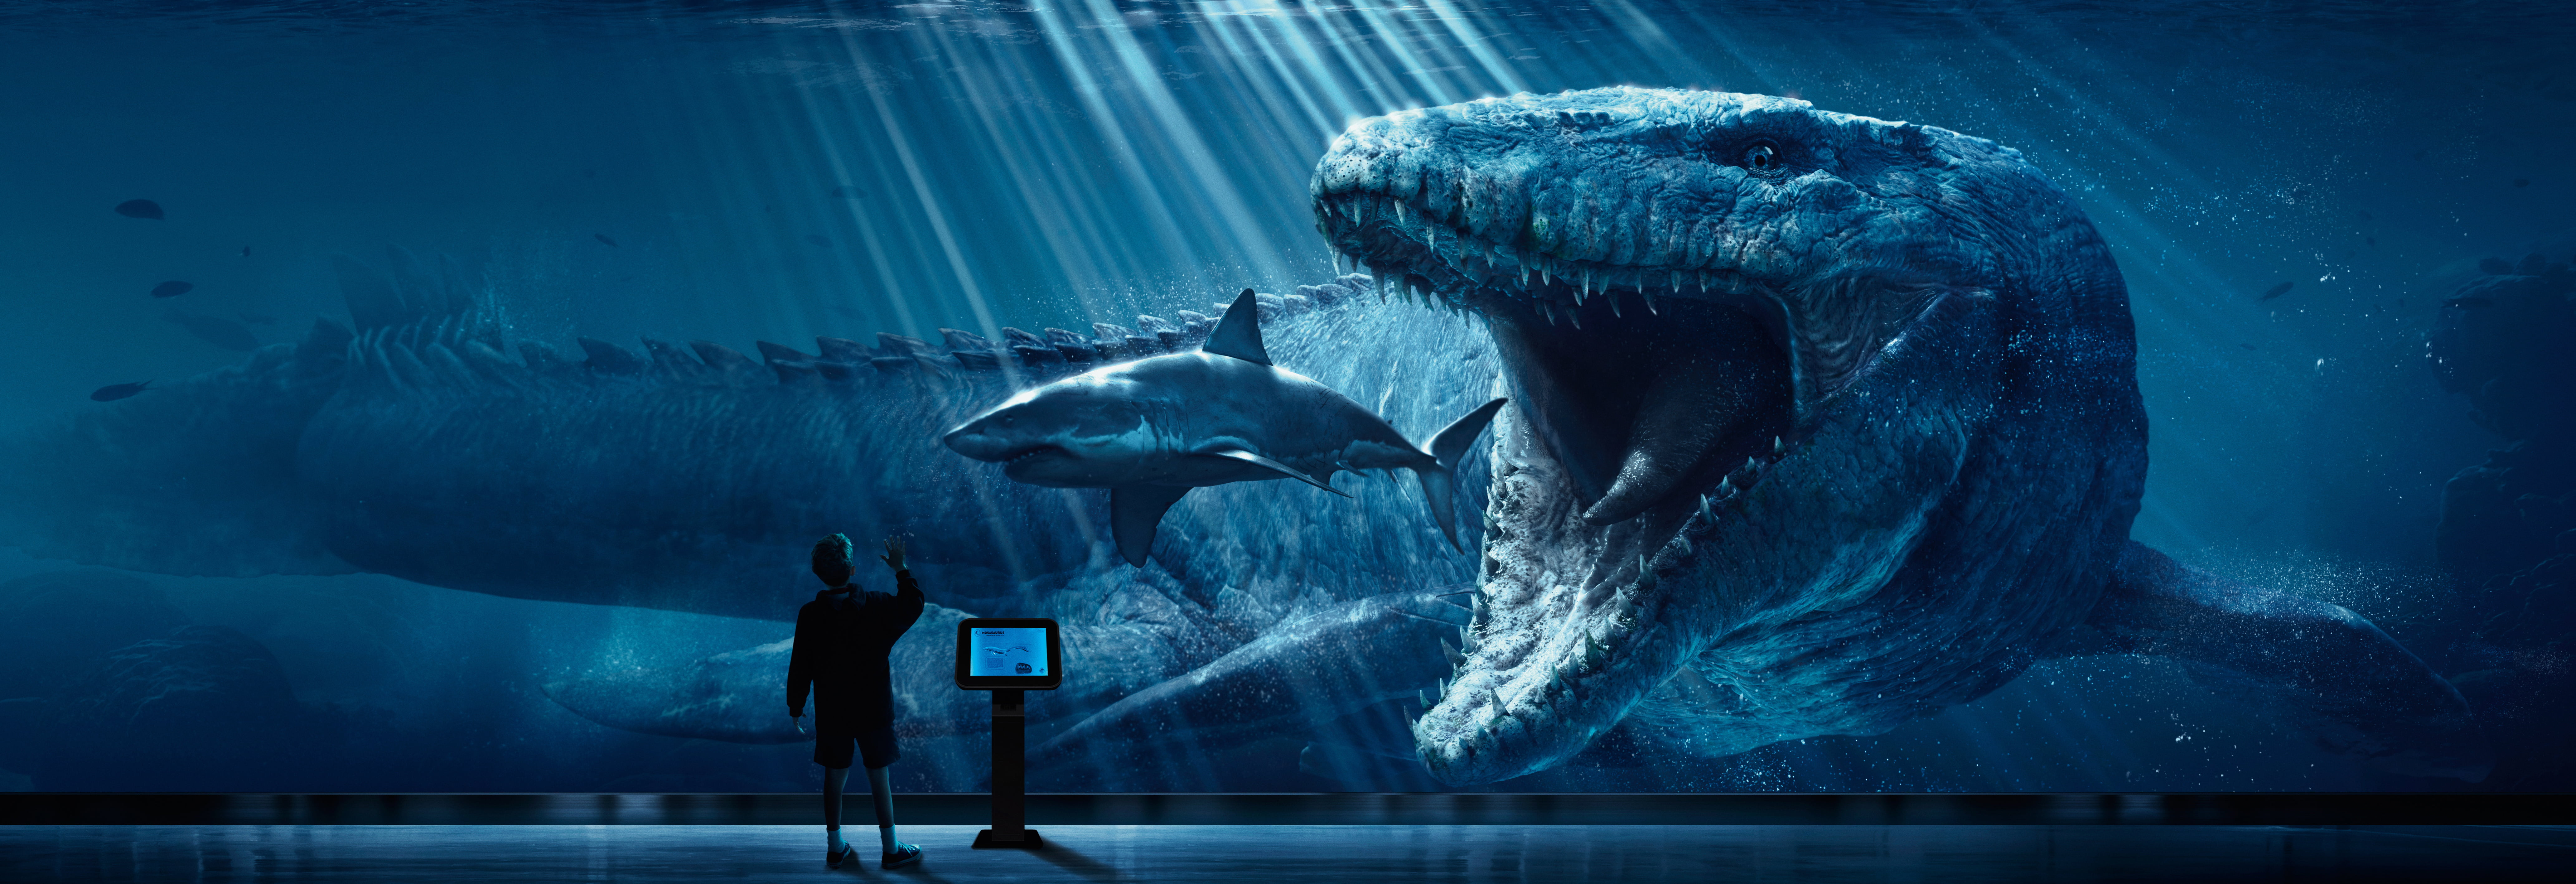 Megalodon wallpaper, digital art, Jurassic World, shark, dinosaurs